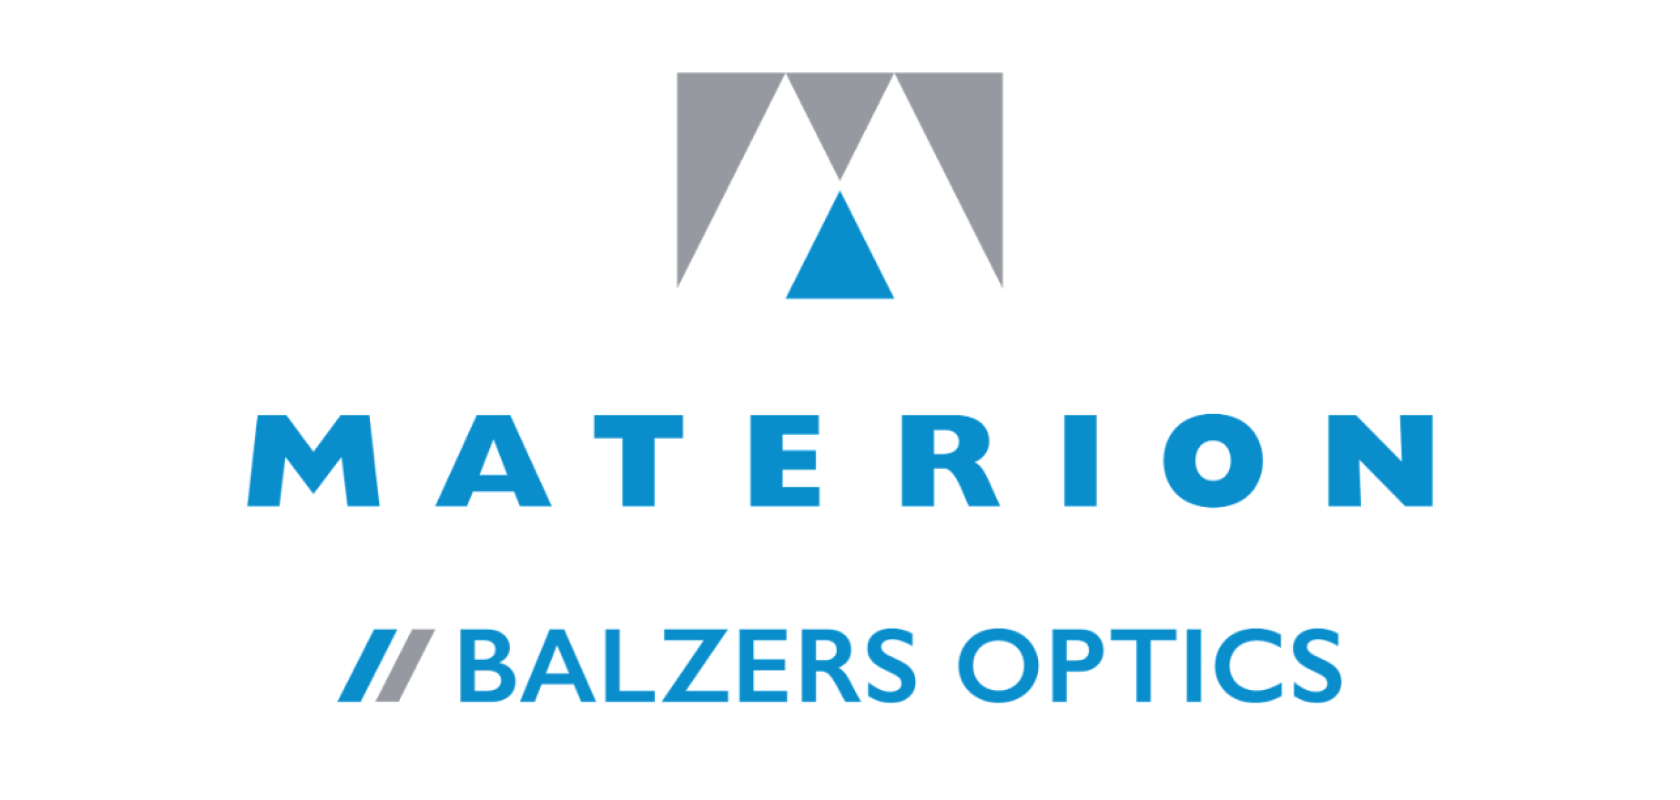 Materion Balzers Optics Logo